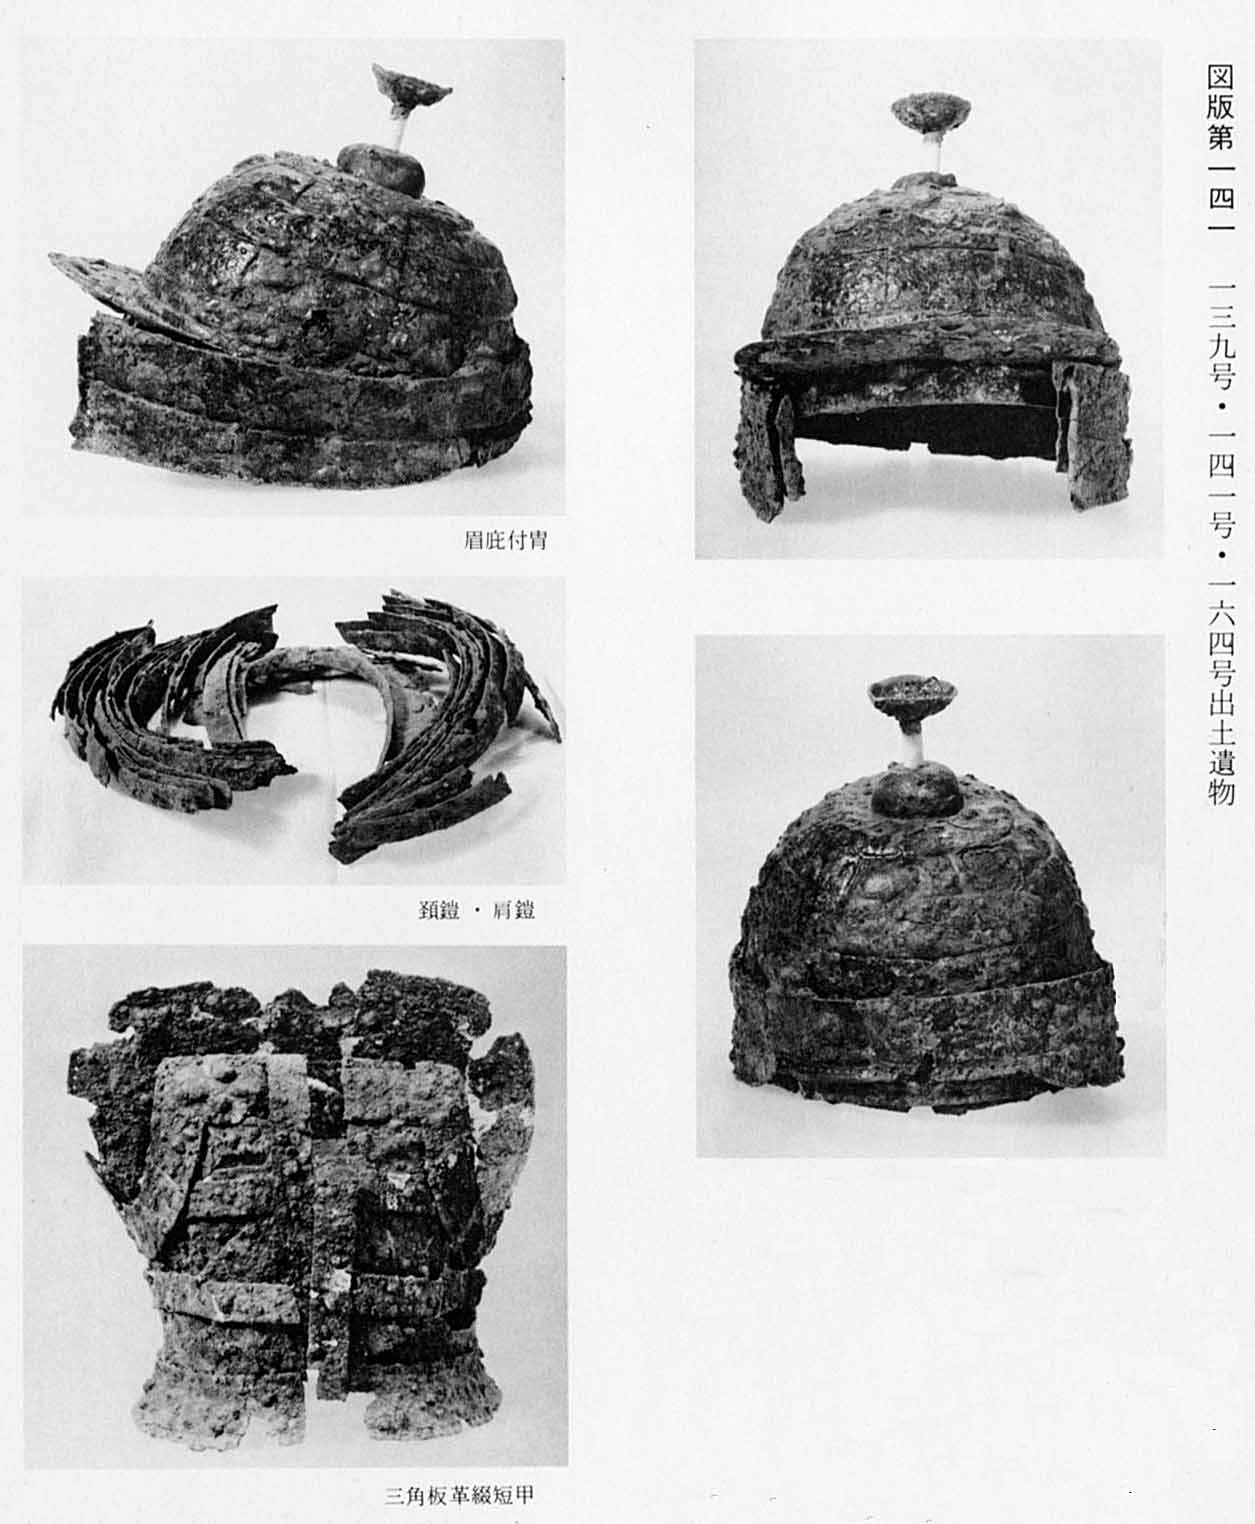 出土されて並べられている兜が3枚、鎧が2枚、それぞれ撮影されているモノクロ写真（図版141左右下段除 139号出土遺物）